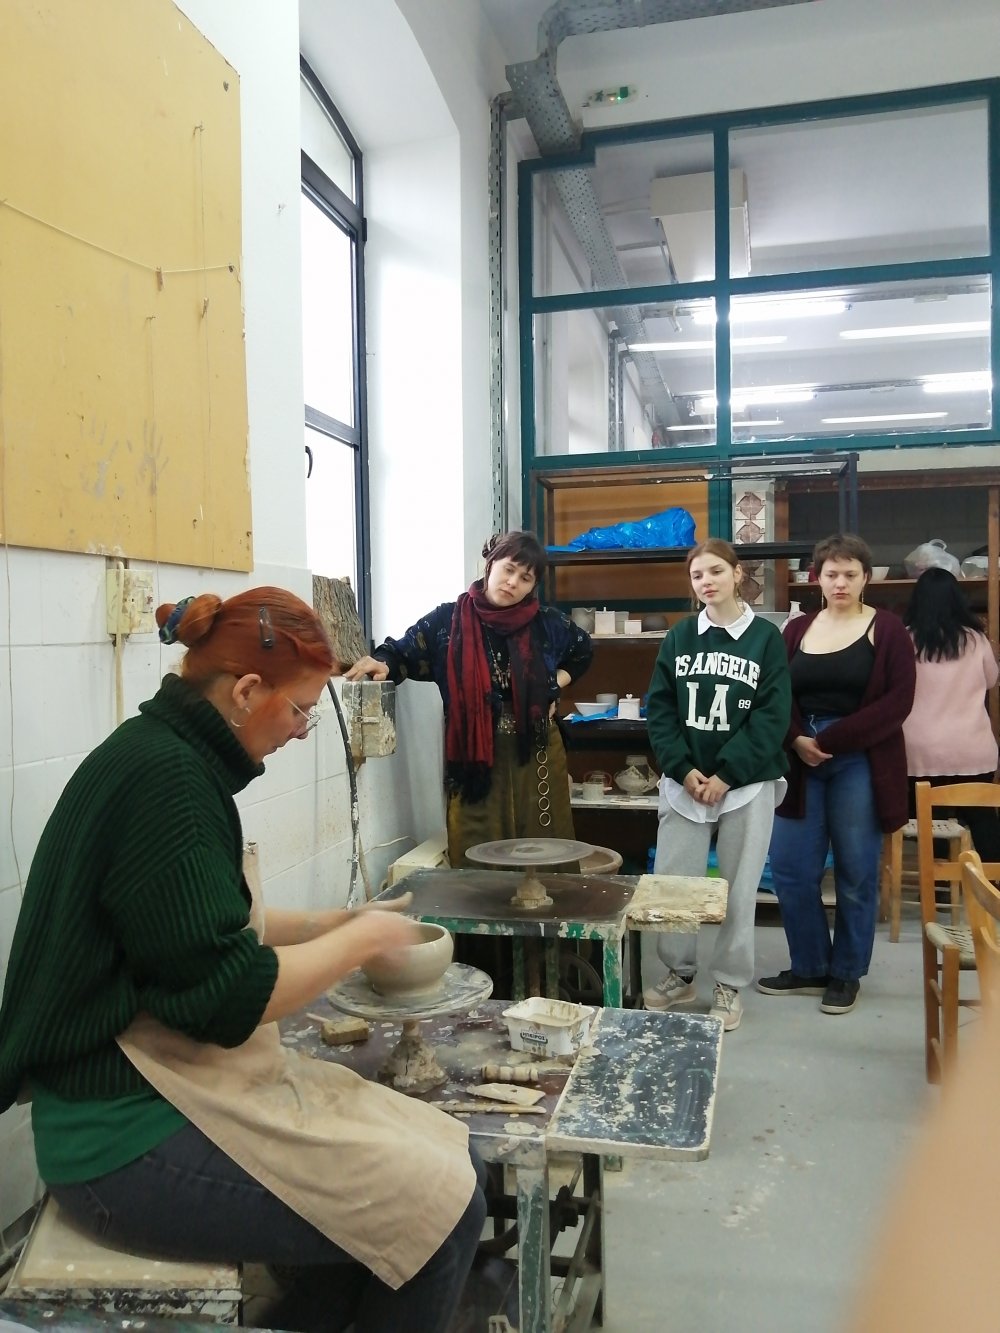 Σπουδάστριες της Janis Rosentals art school της Λετονίας και Καθηγητής τους, στο ΙΙΕΚ της ΚΕΚΠΑ – ΔΙΕΚ Δήμου Βόλου, με Erasmus+ project.